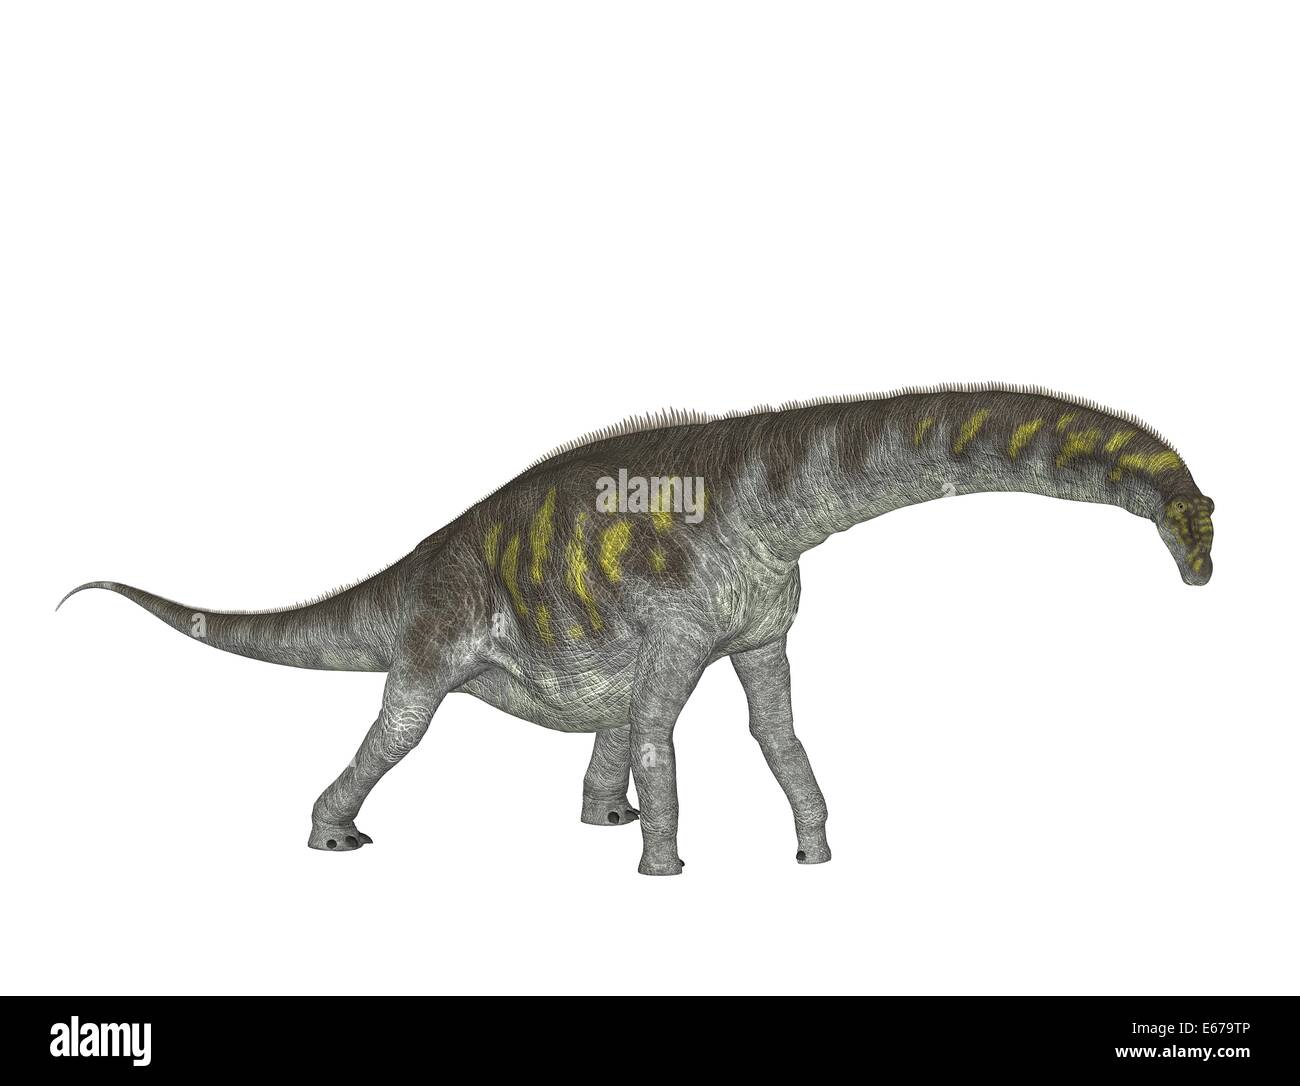 Dinosaurier Argentinosaurus / dinosaur Argentinosaurus Stock Photo